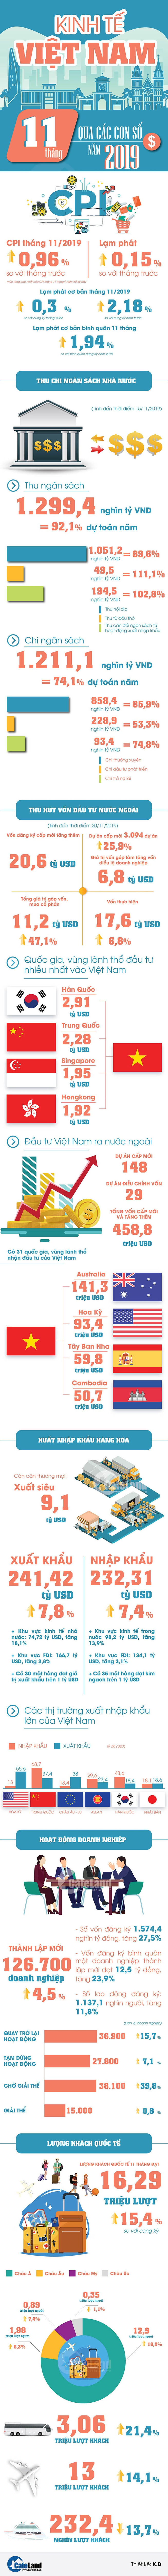 Infographic: Toàn cảnh kinh tế Việt Nam 11 tháng qua các con số